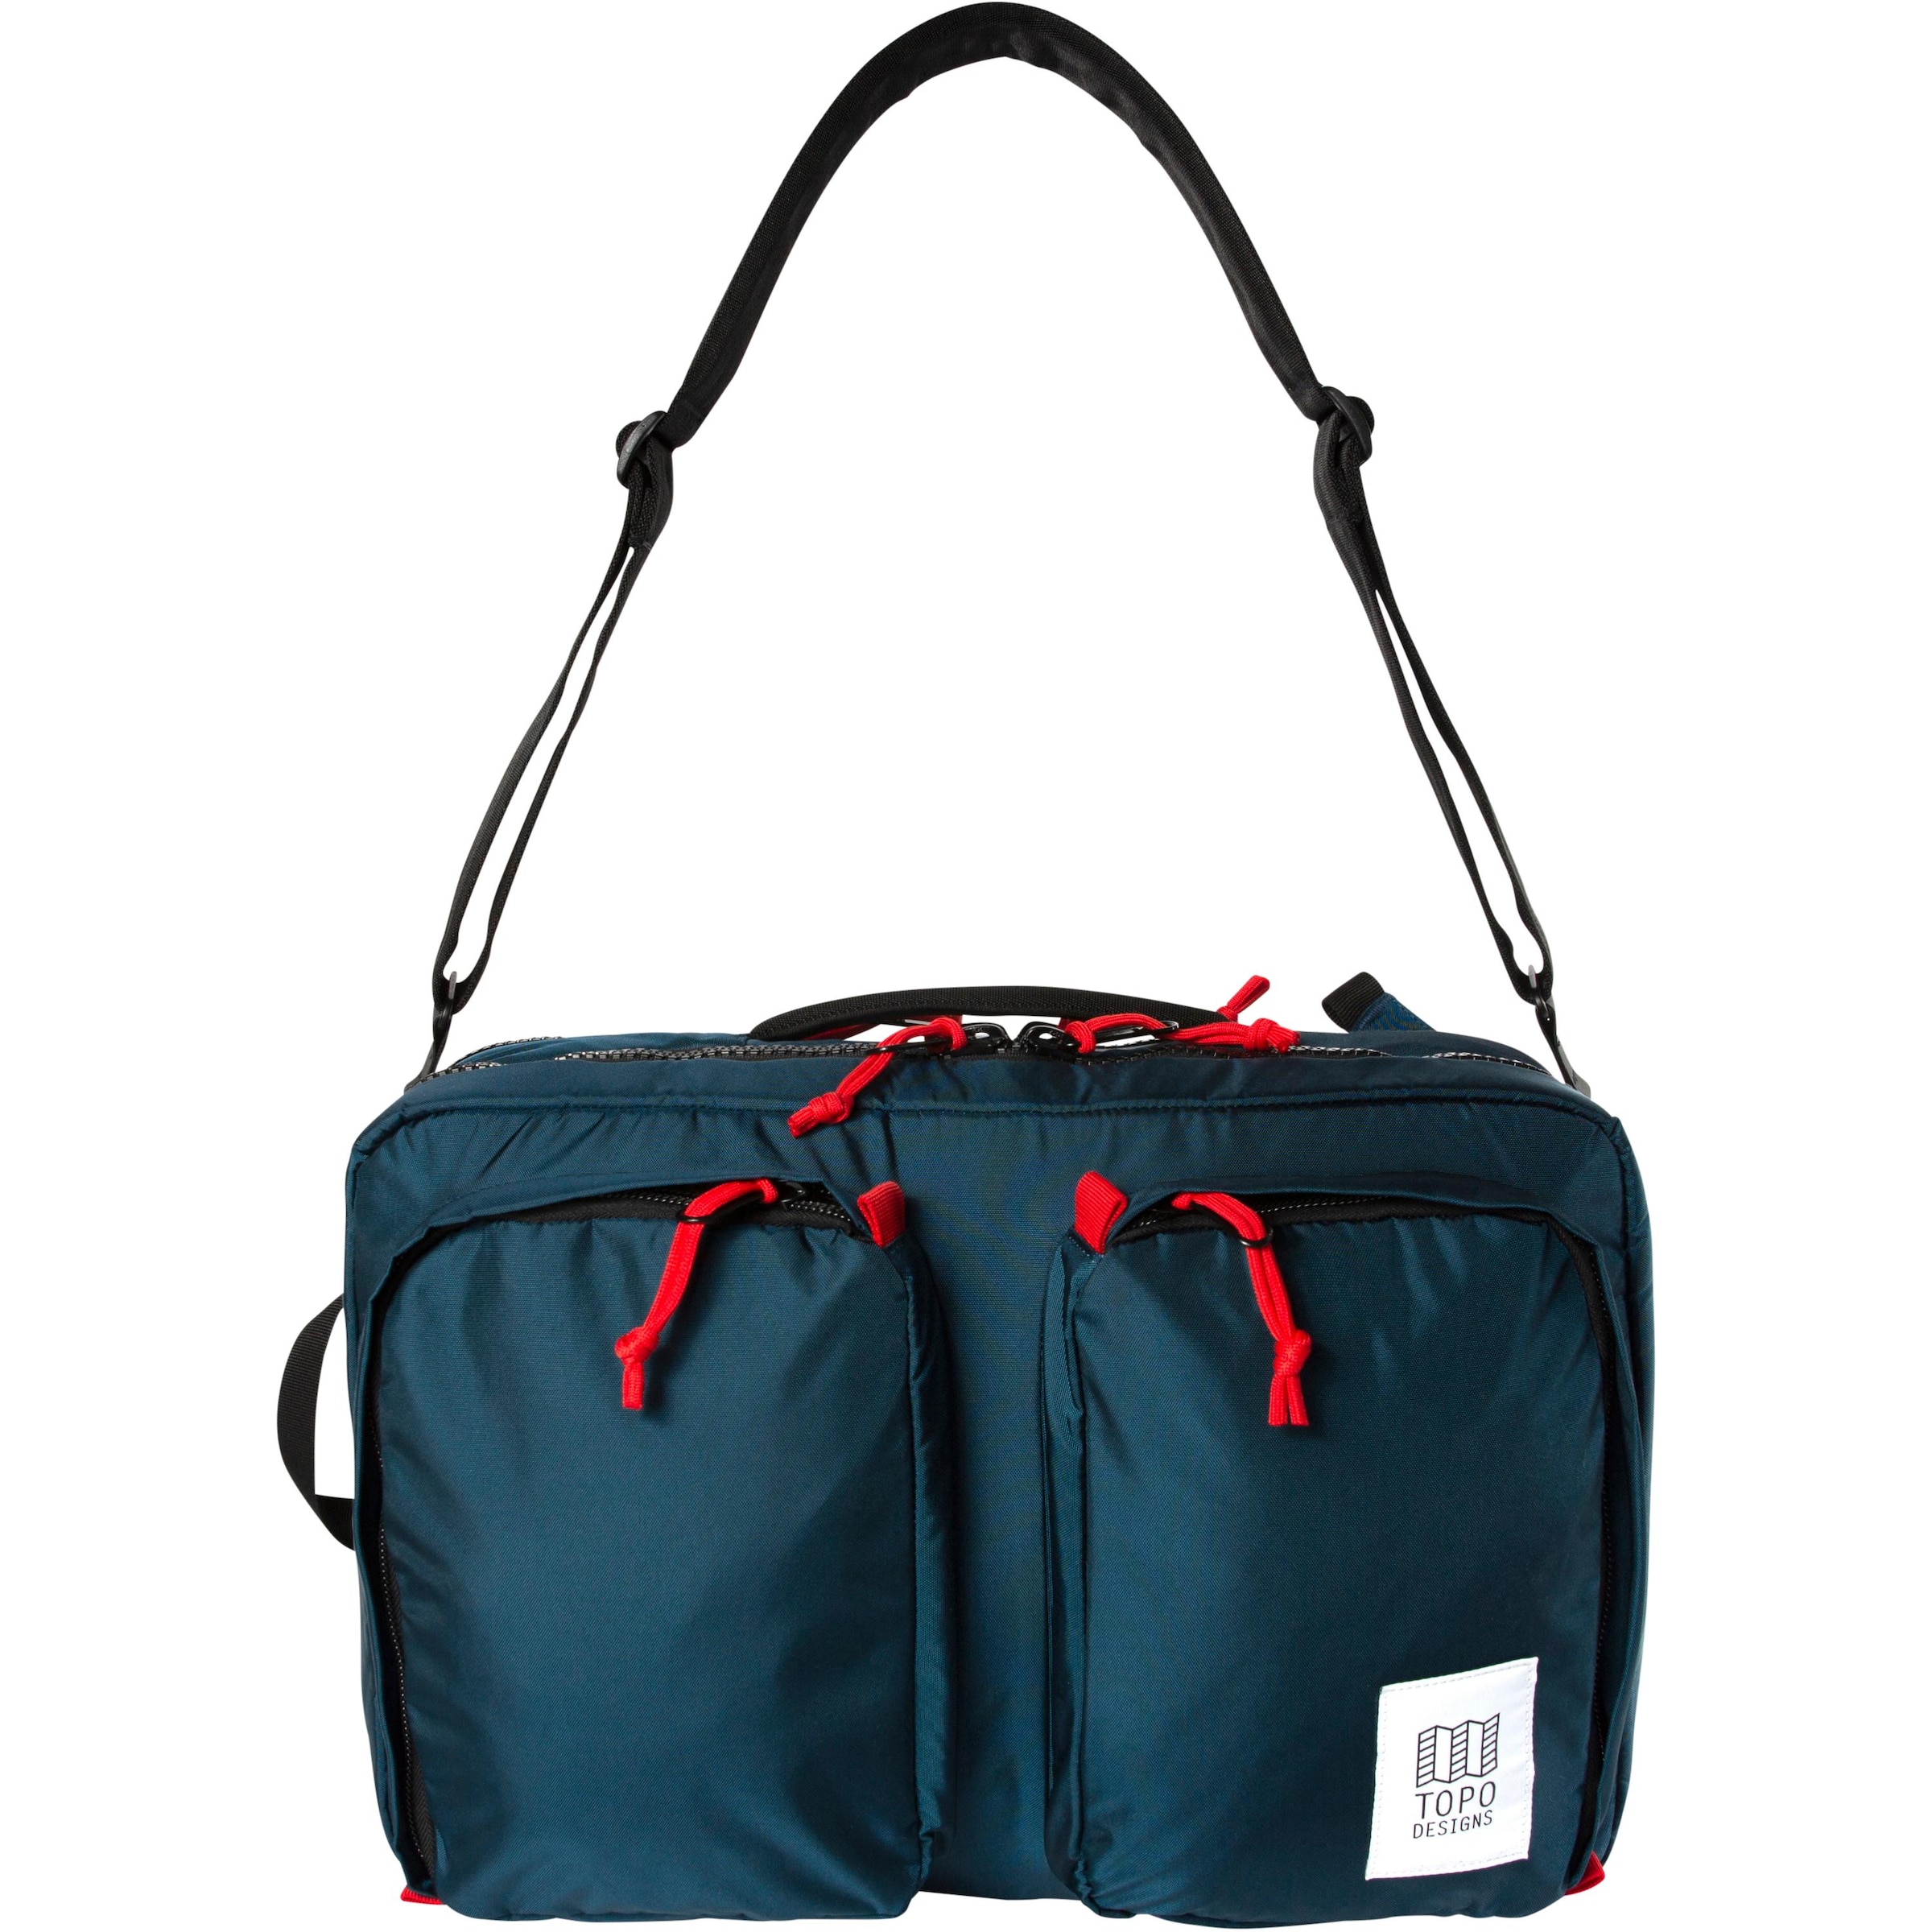 Frauen Taschen & Rucksäcke Topo Designs Rucksack in Navy - WD94424